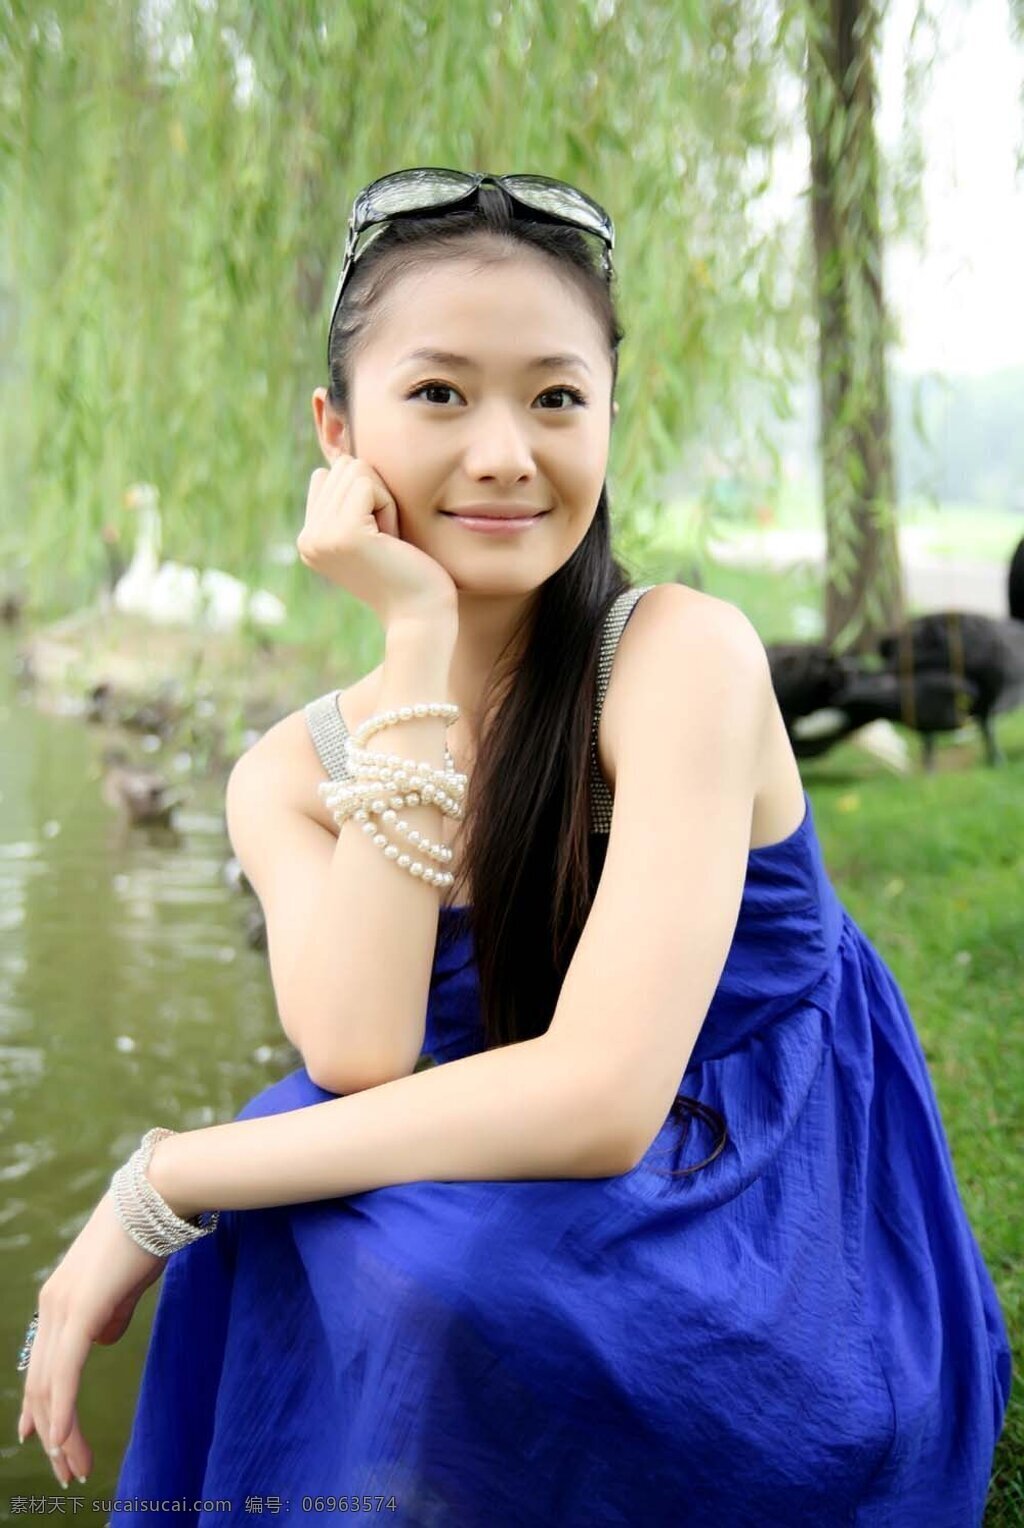 杨斯 蓝裙 写真 北京舞蹈学院 美女 明星偶像 人物图库